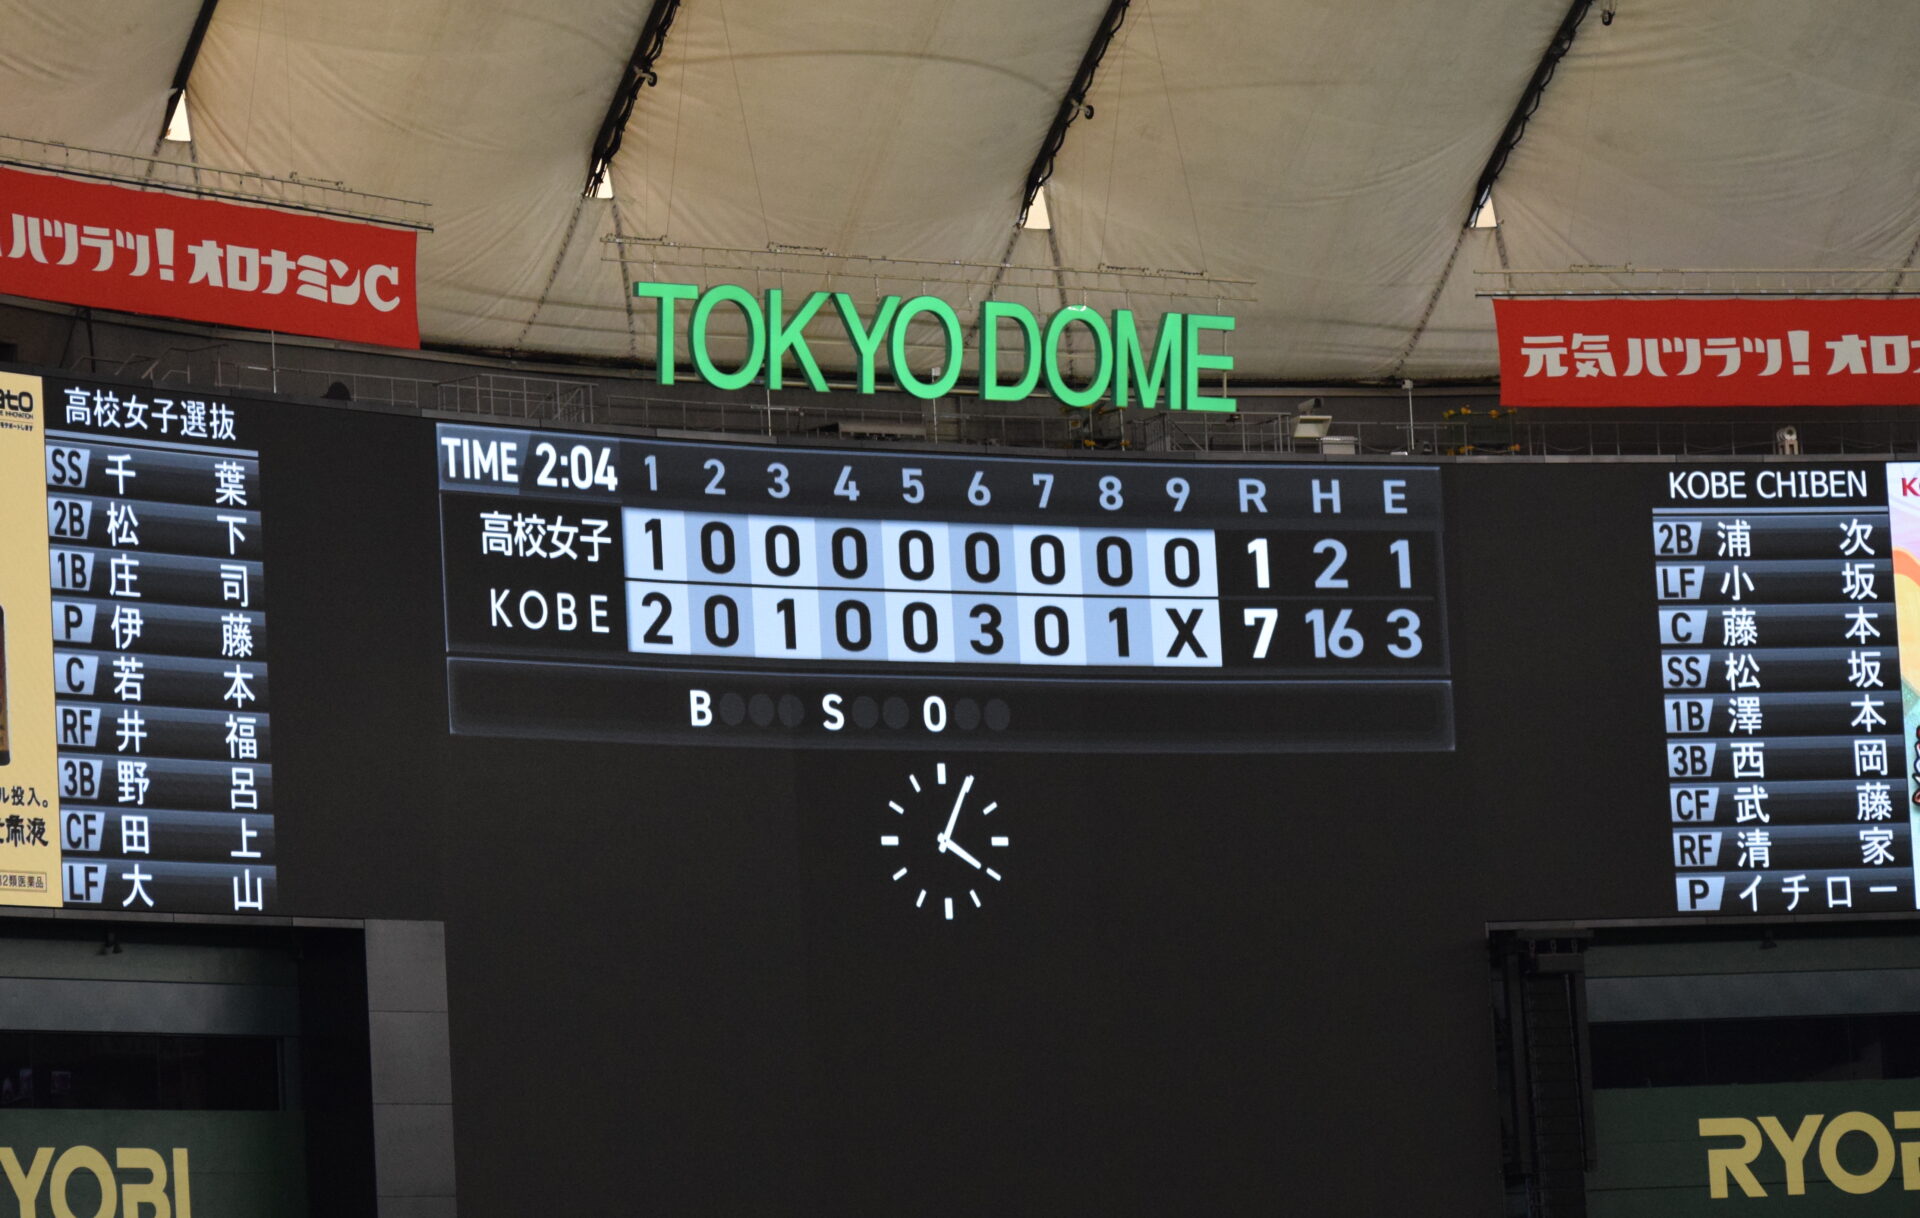 高校女子野球選抜 vs イチロー選抜KOBE CHIBEN 試合結果